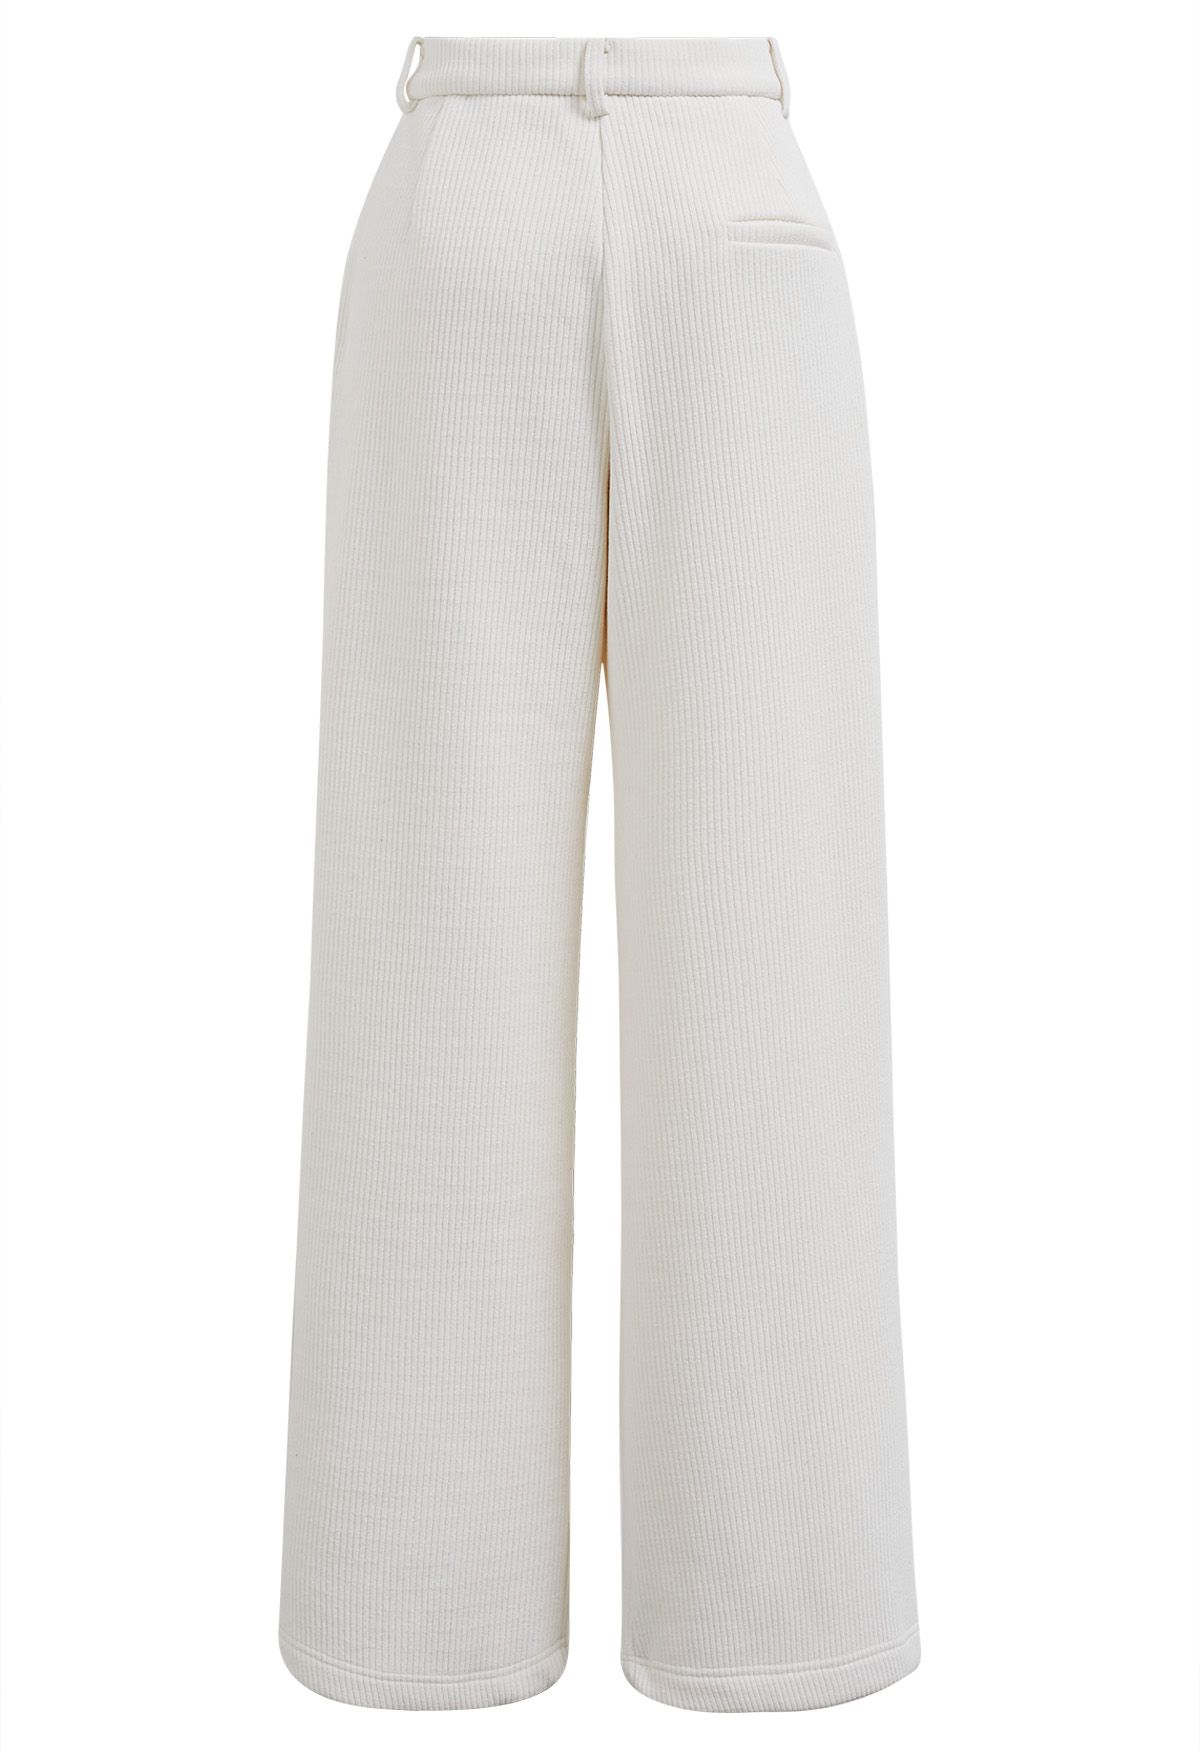 Pantalones rectos de pana con cinturón y forro polar en blanco